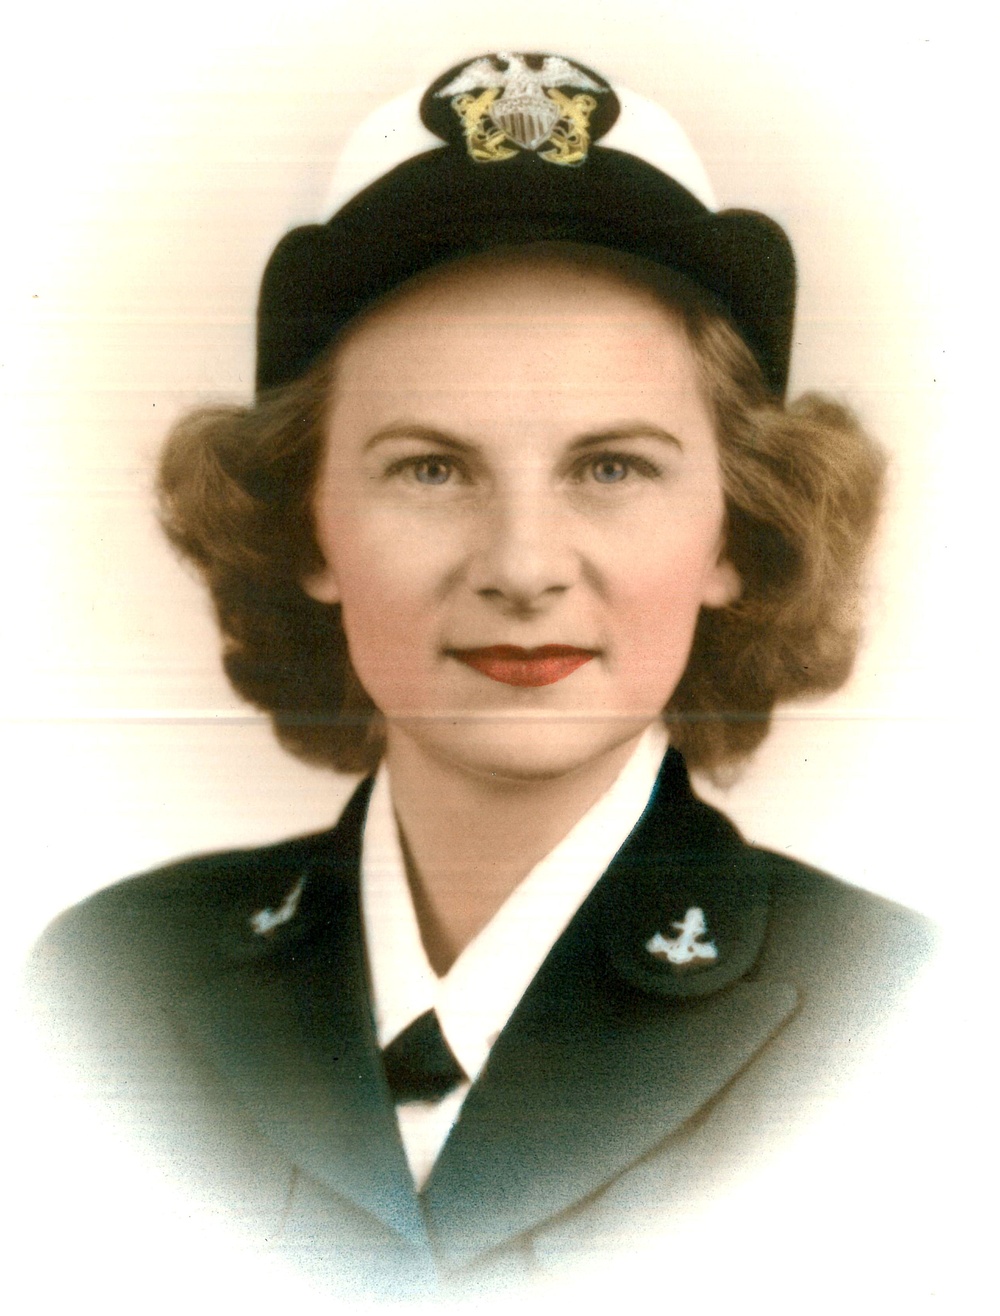 DVIDS - Images - Former Navy WAVE, 91, Recalls Her Service